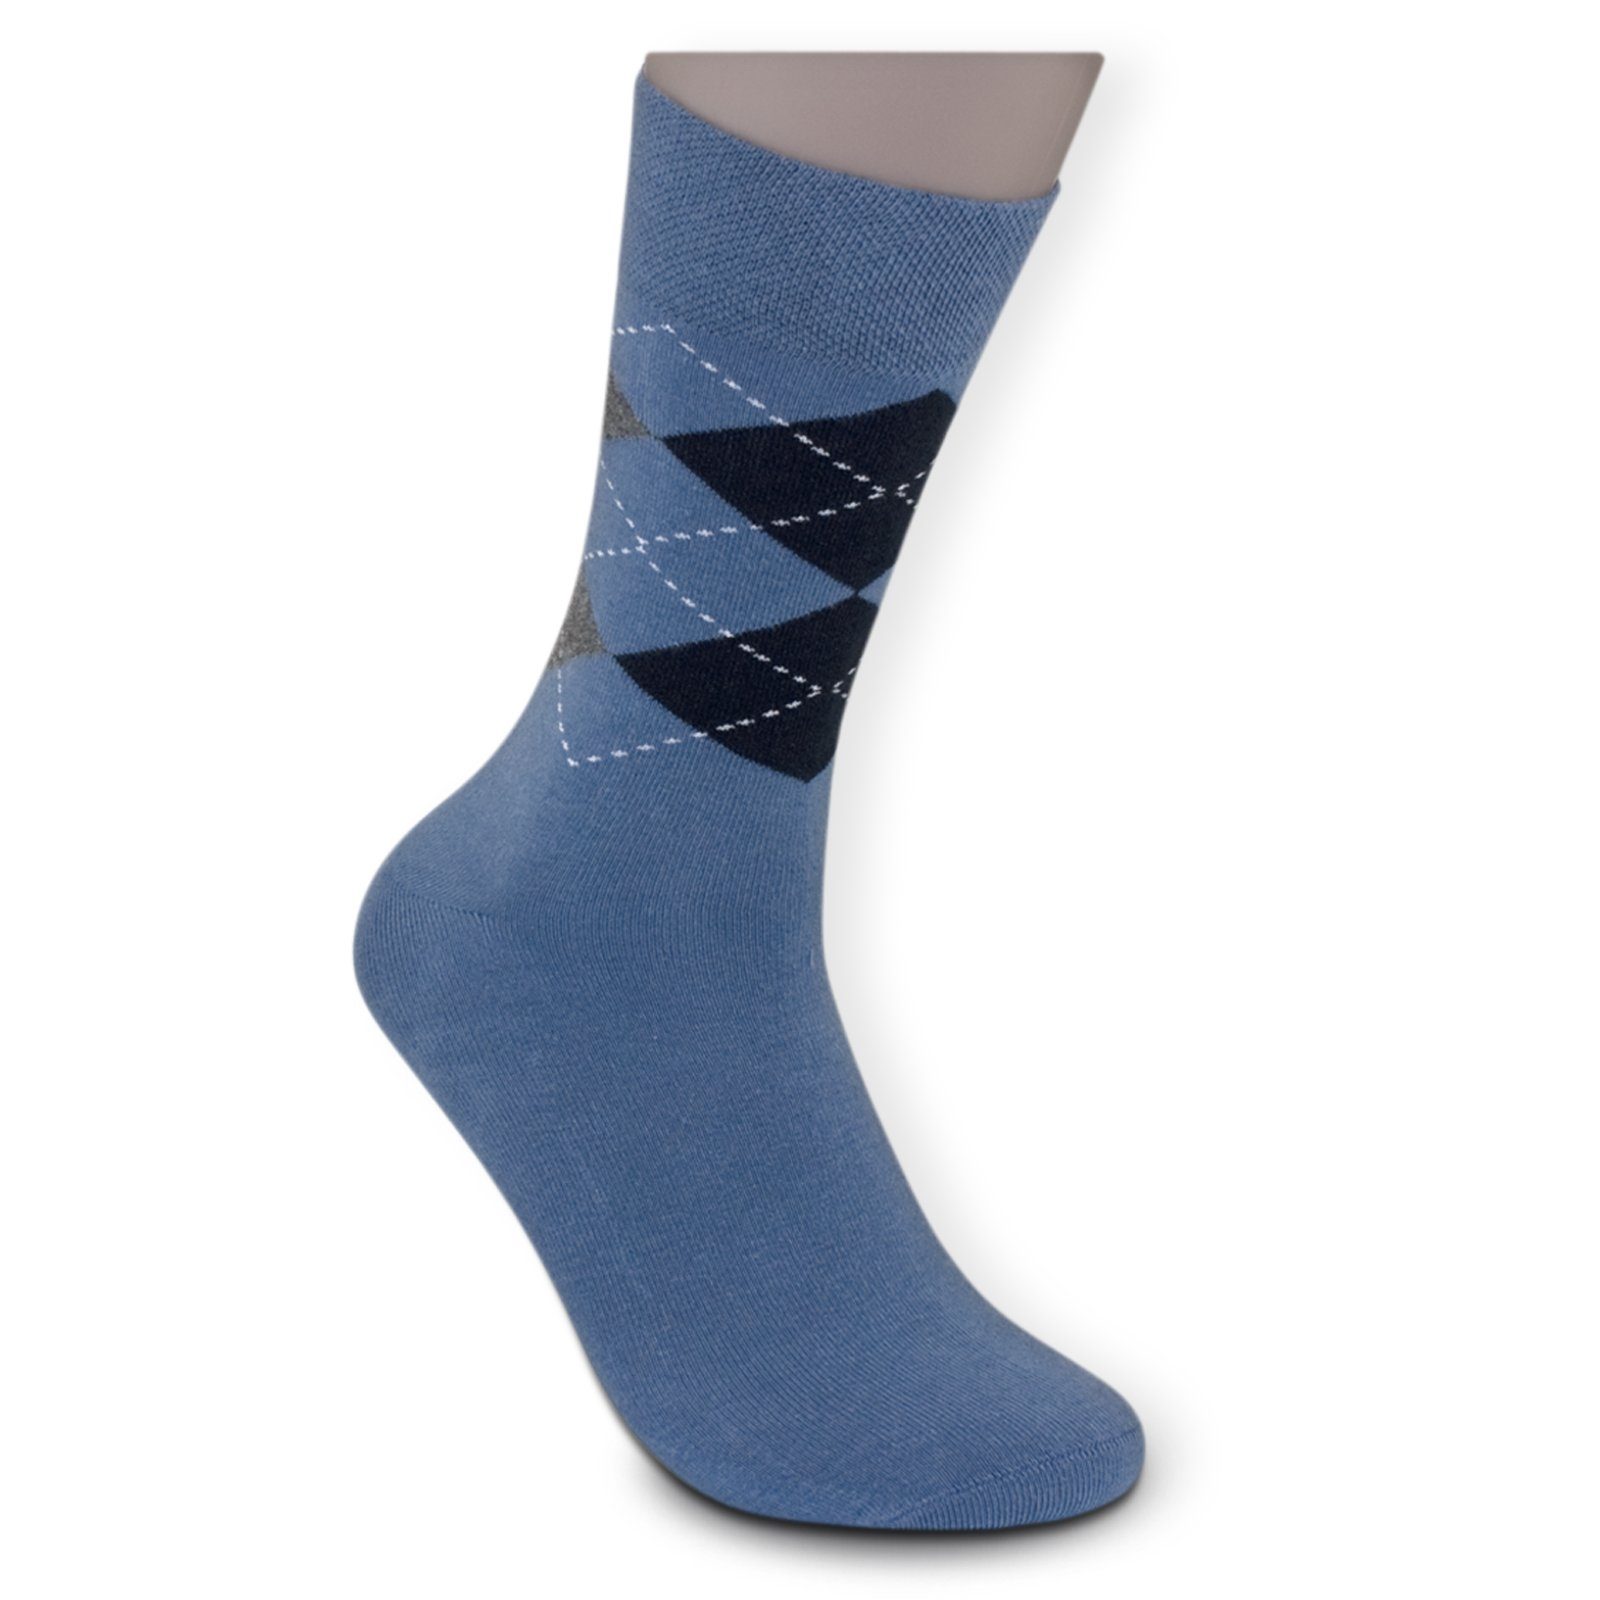 schwarz (Bund, blau) mit Sockenbude Freizeitsocken JACQUARD Komfortbund Die Gummi ohne 5-Paar, grau